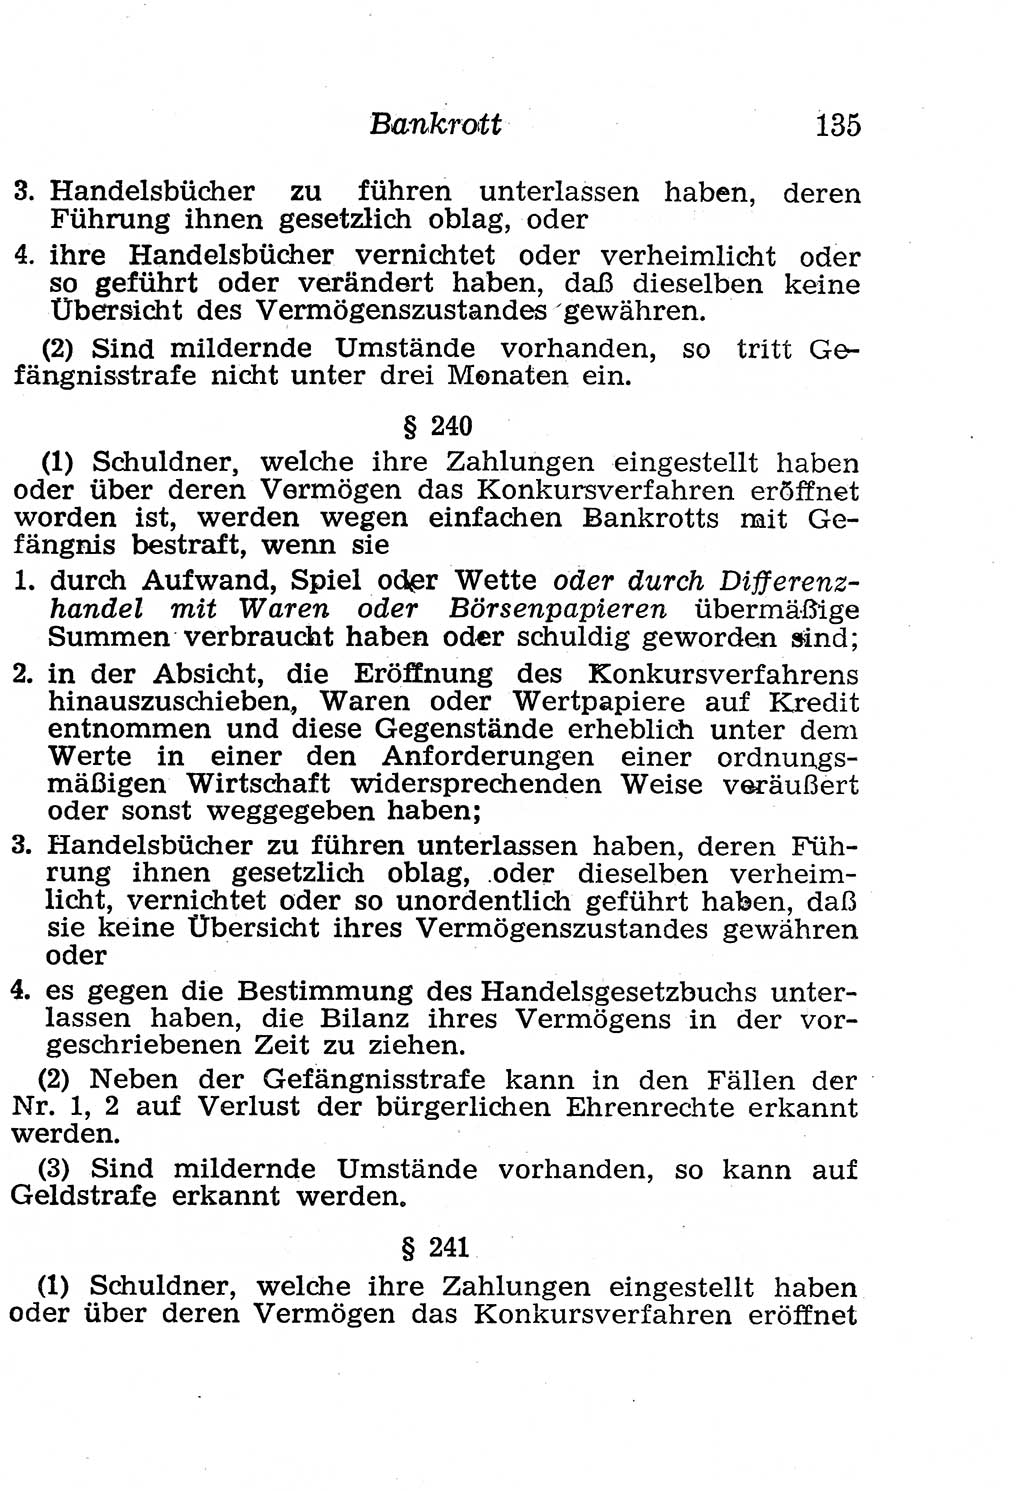 Strafgesetzbuch (StGB) und andere Strafgesetze [Deutsche Demokratische Republik (DDR)] 1958, Seite 135 (StGB Strafges. DDR 1958, S. 135)